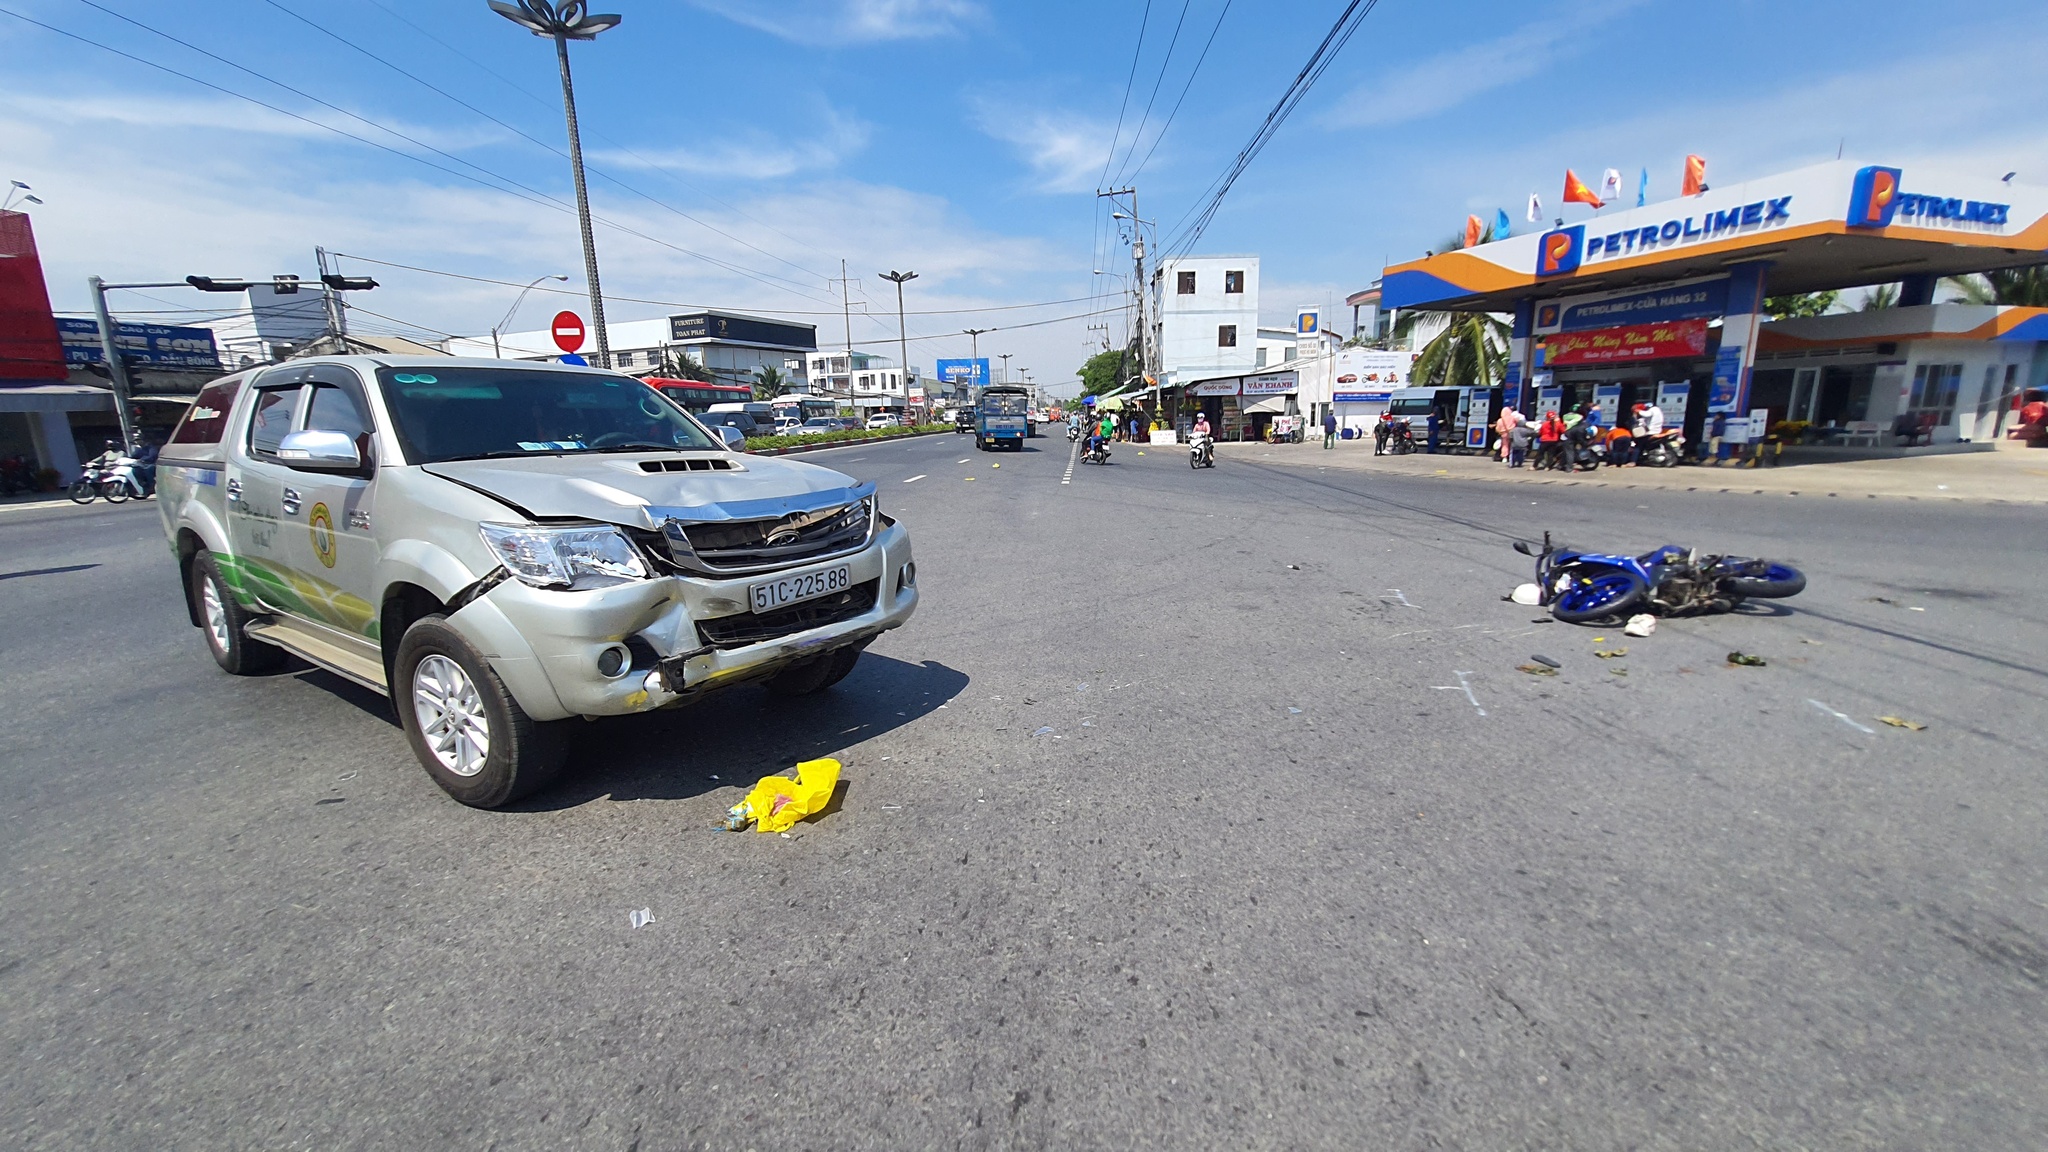 Tai nạn ở Tiền Giang: Xe máy va chạm xe bán tải, 2 người bị thương nặng - ảnh 1